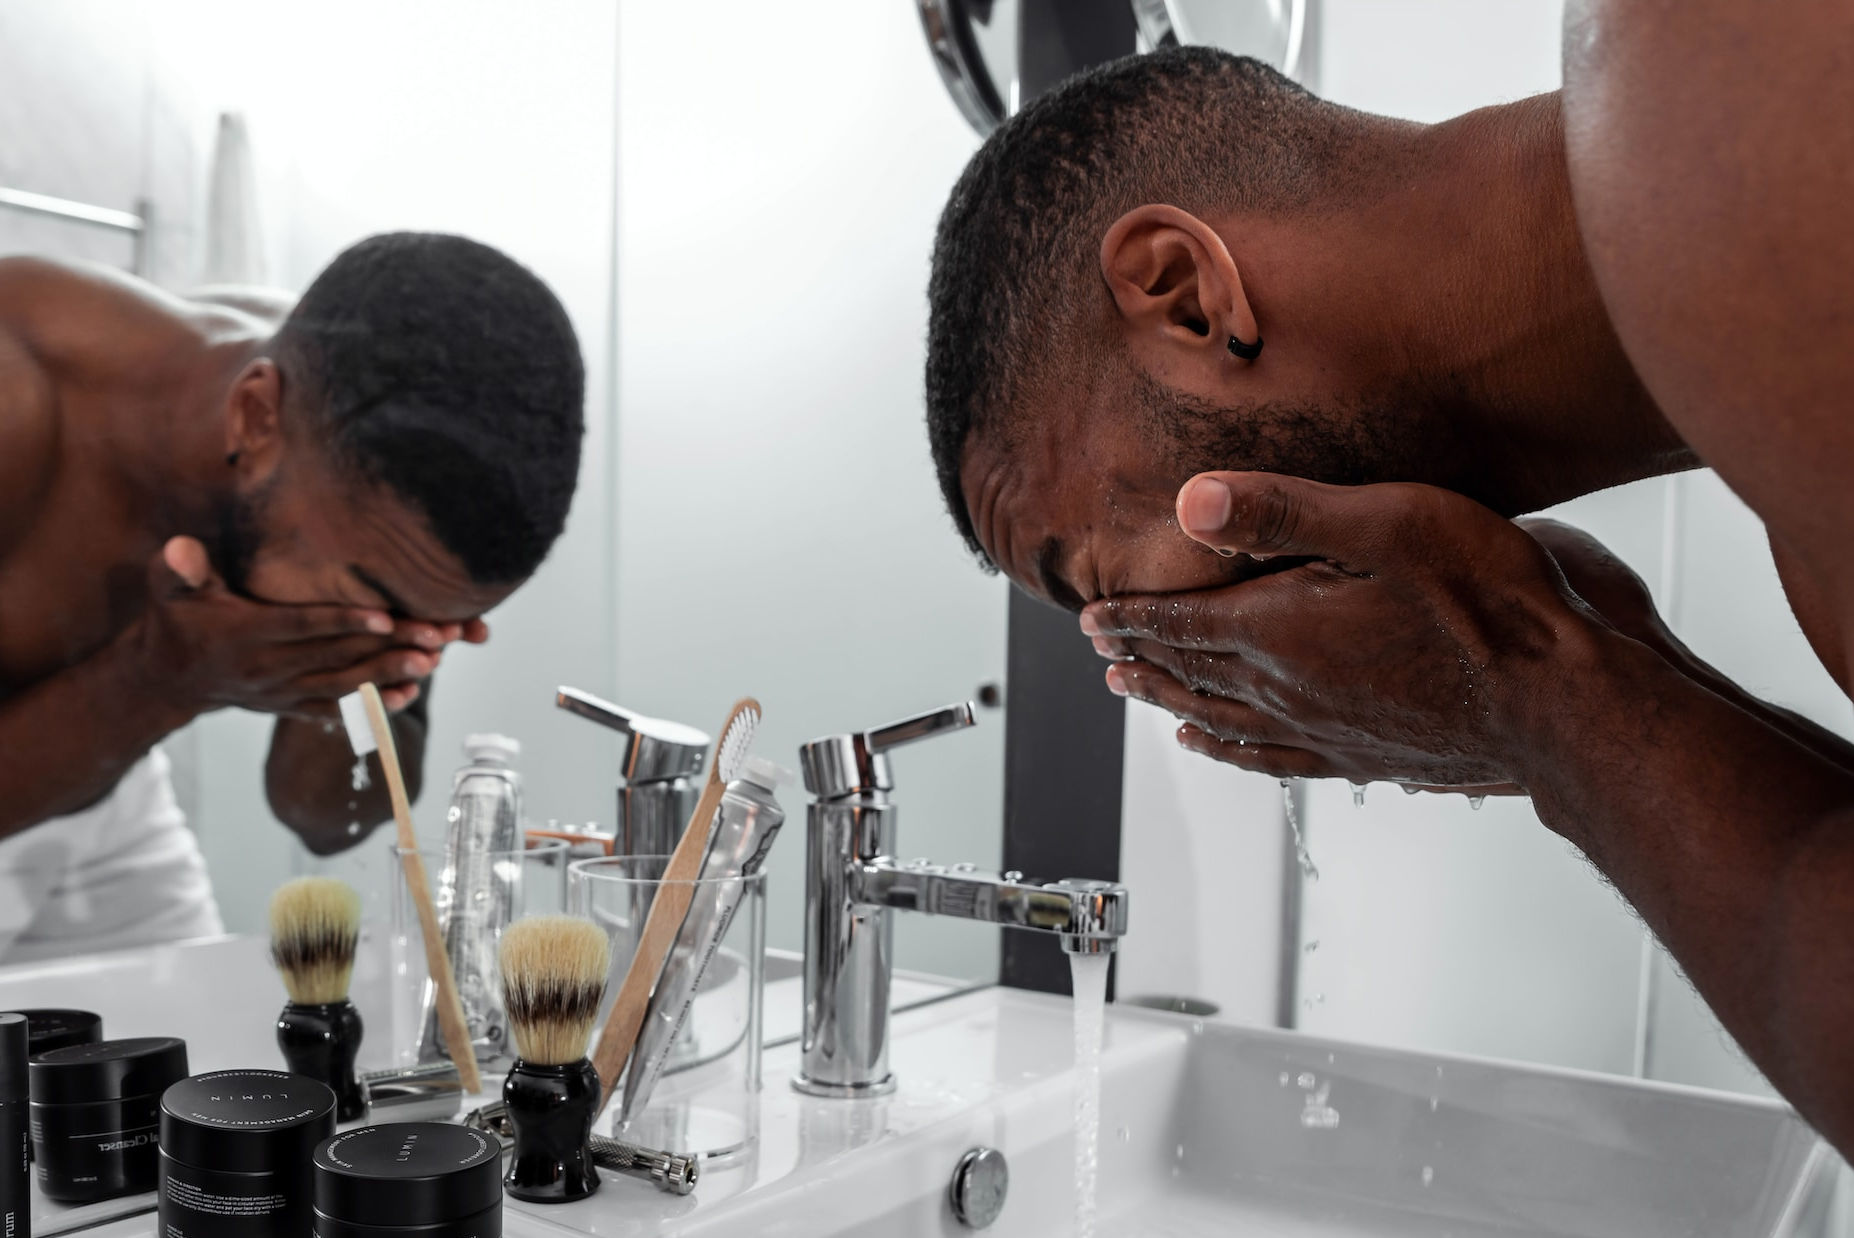 a black man washes his eyes in a bathroom